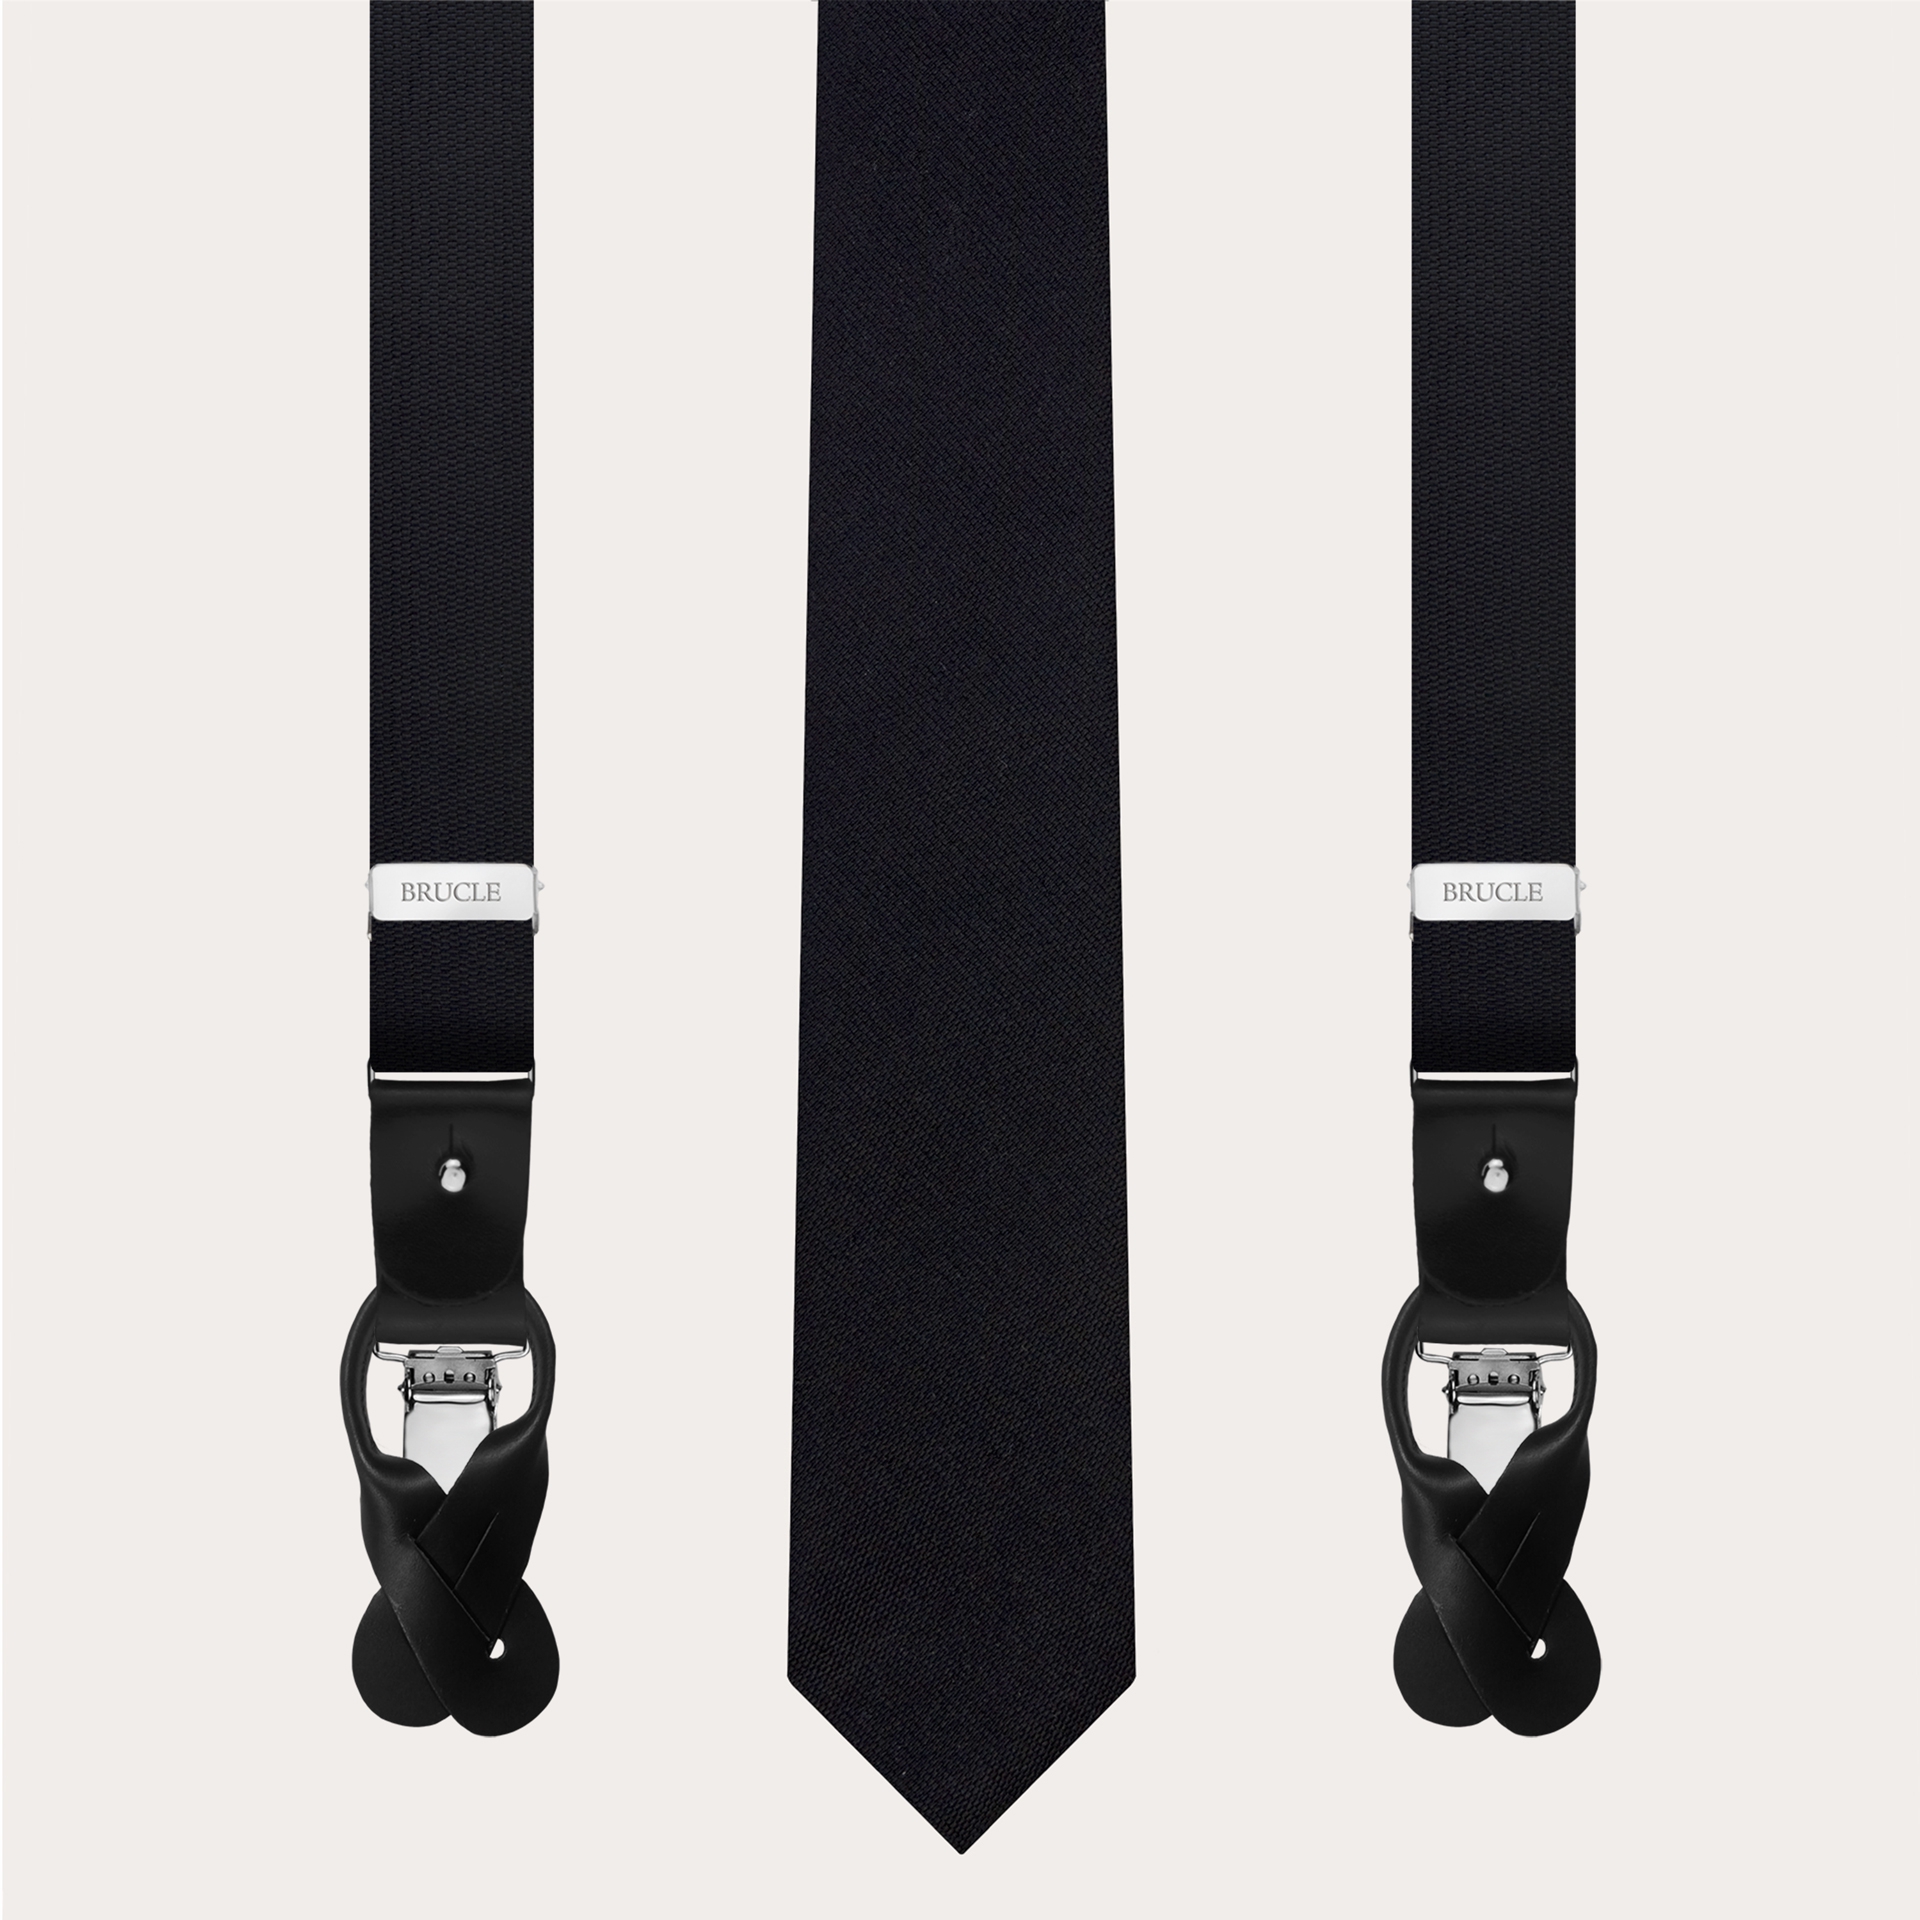 Bretelles et cravate fines assorties en soie jacquard noire